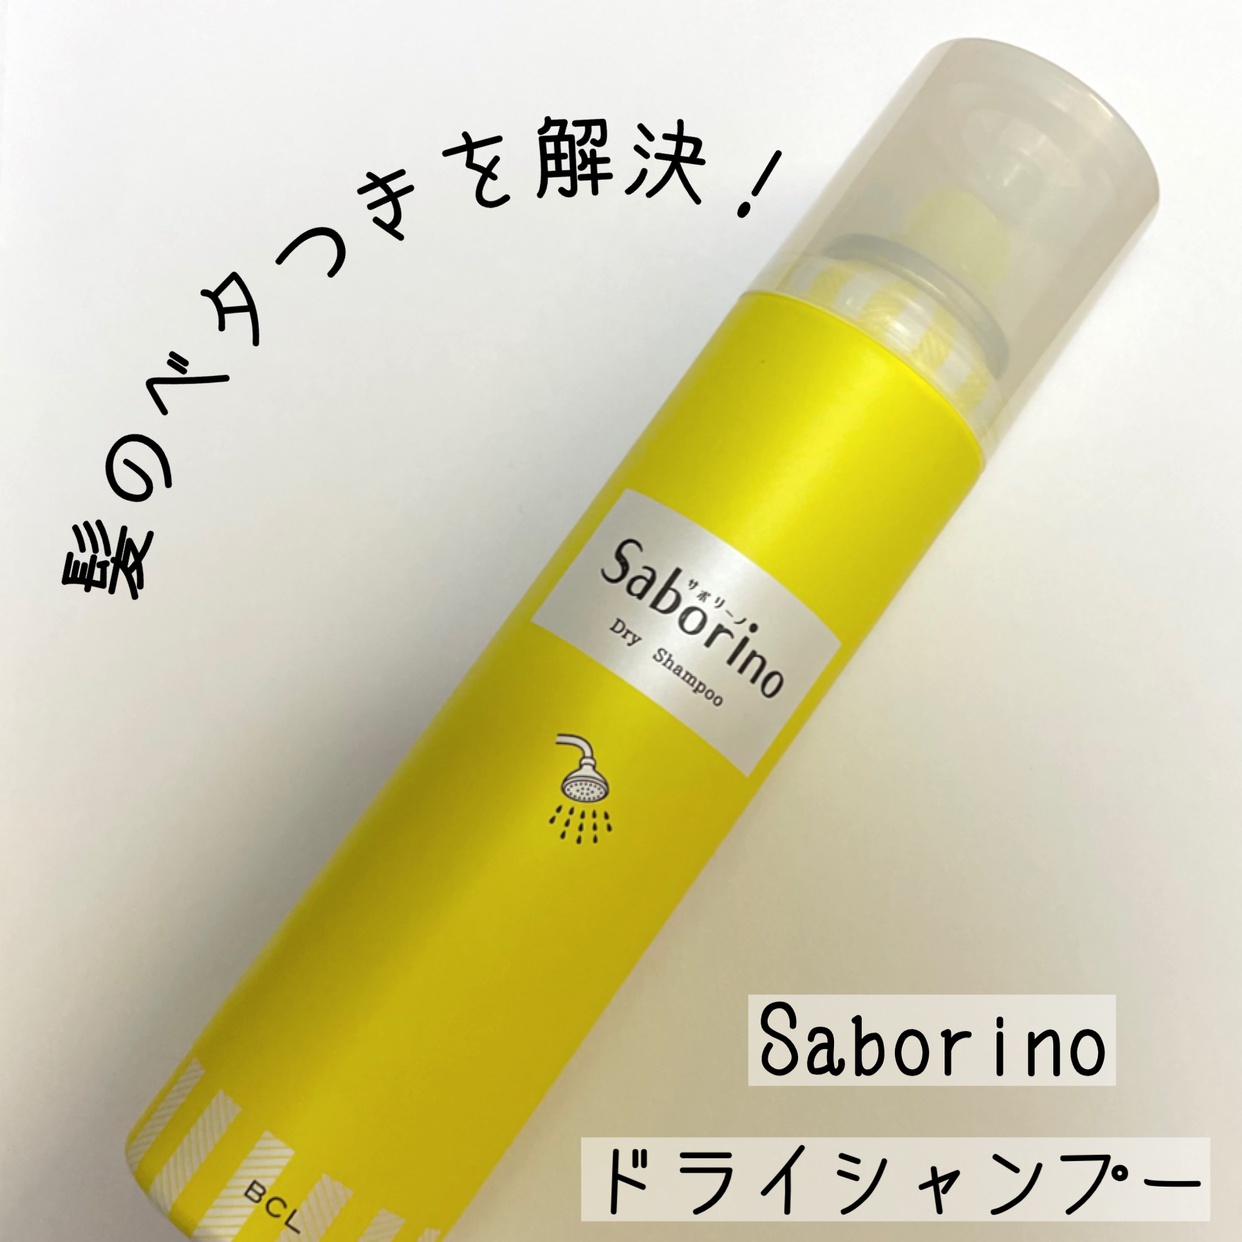 Saborino(サボリーノ) 髪を洗いまスプレーの良い点・メリットに関するおばけパンダさんの口コミ画像1